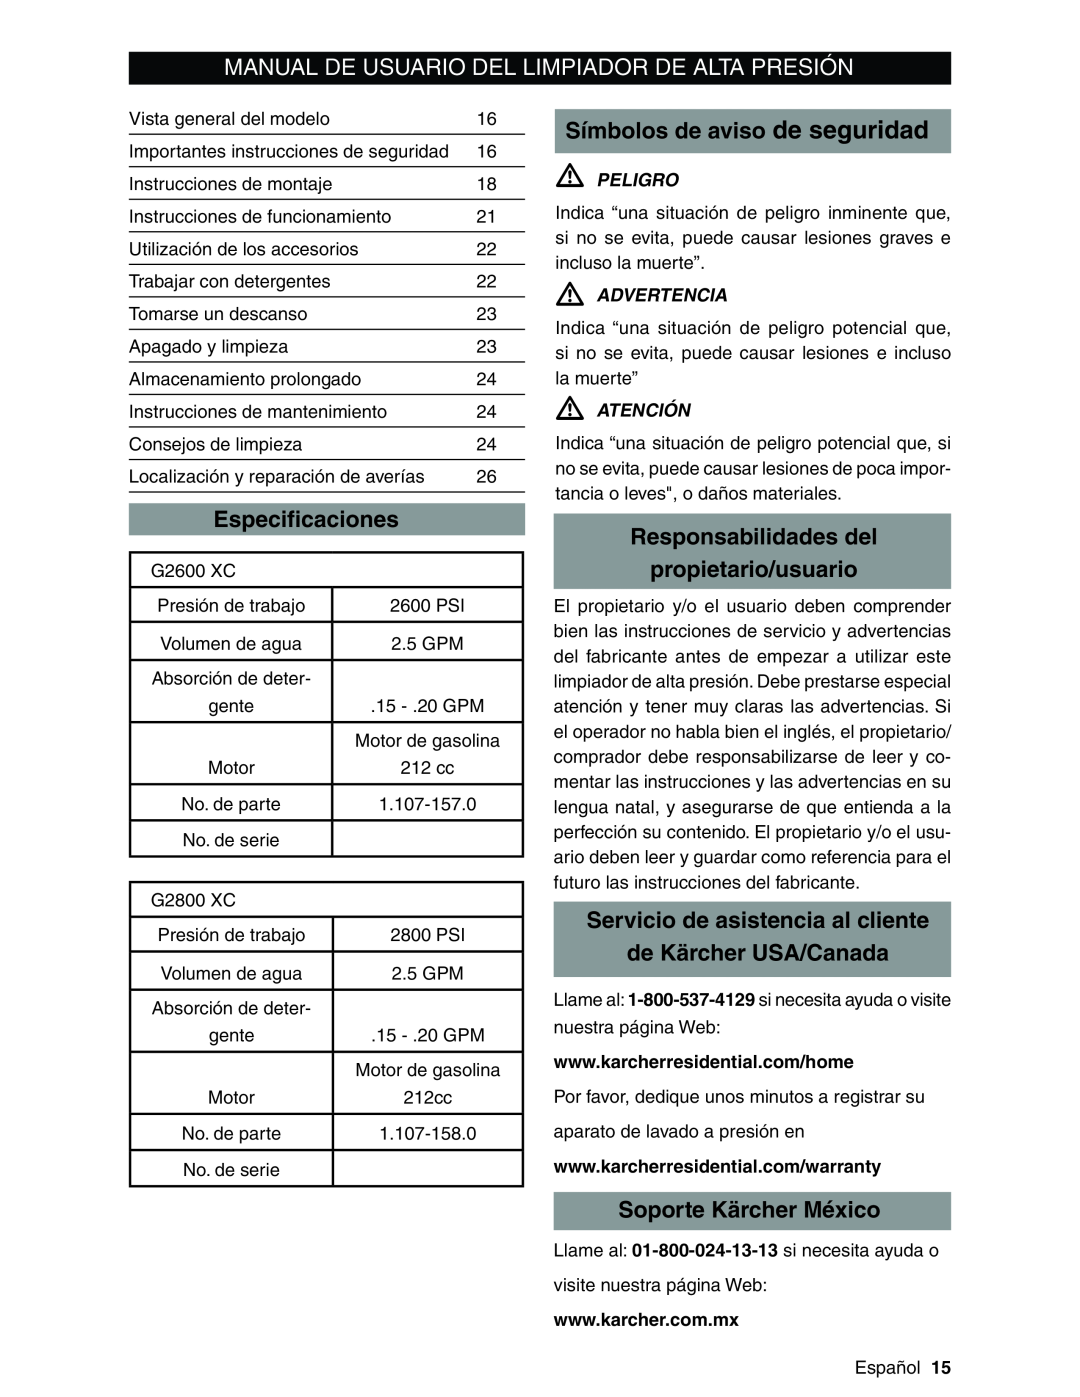 Karcher G2600XC Manual De Usuario Del Limpiador De Alta Presión, Símbolos de aviso de seguridad, Especiﬁcaciones, Peligro 